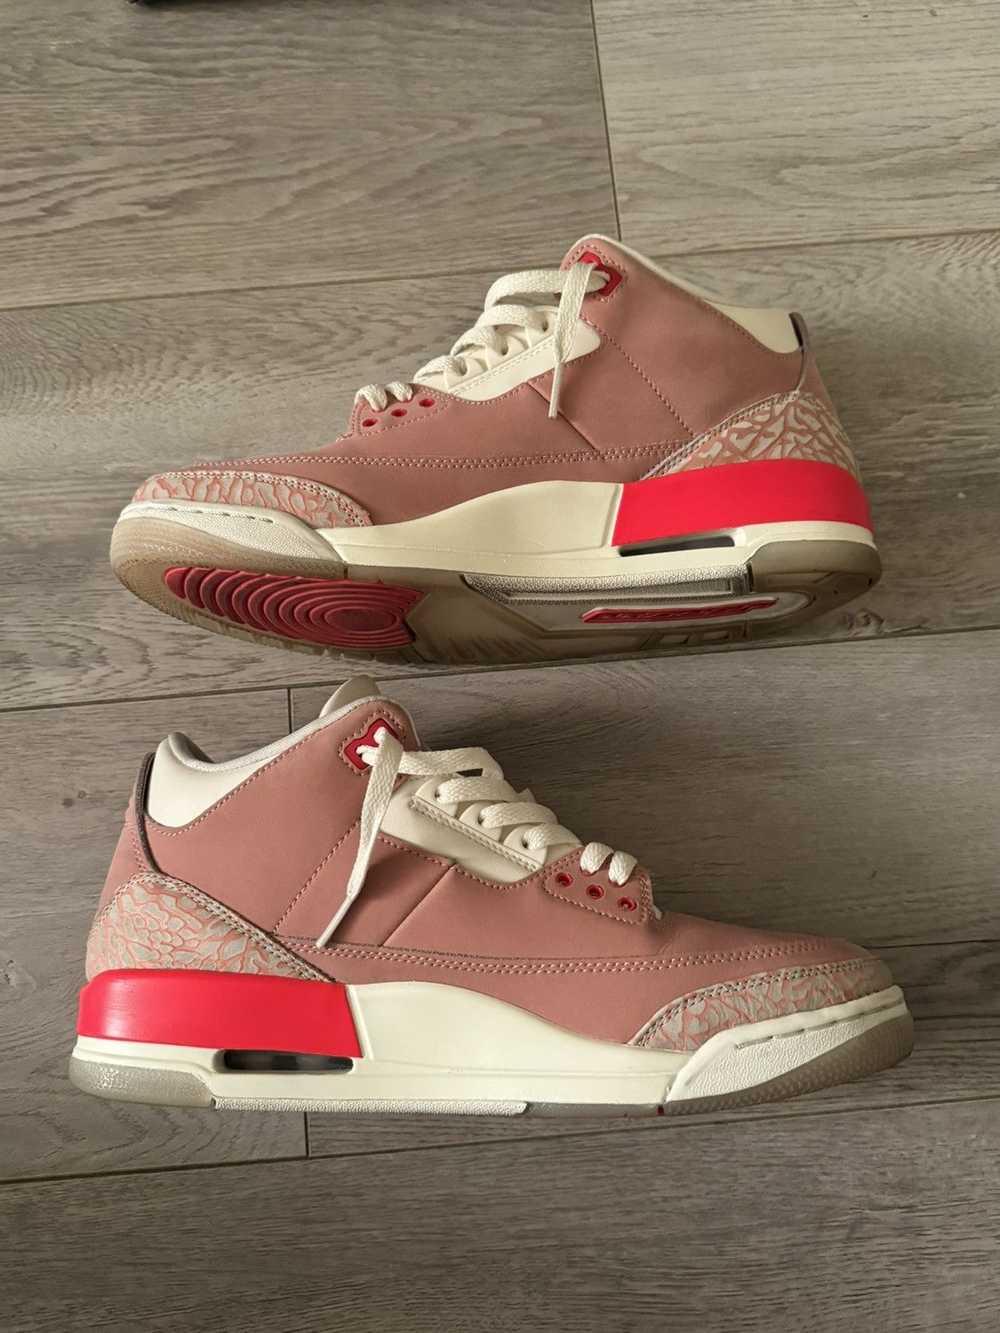 Jordan Brand × Nike Air Jordan 3 “Rust Pink” - image 3